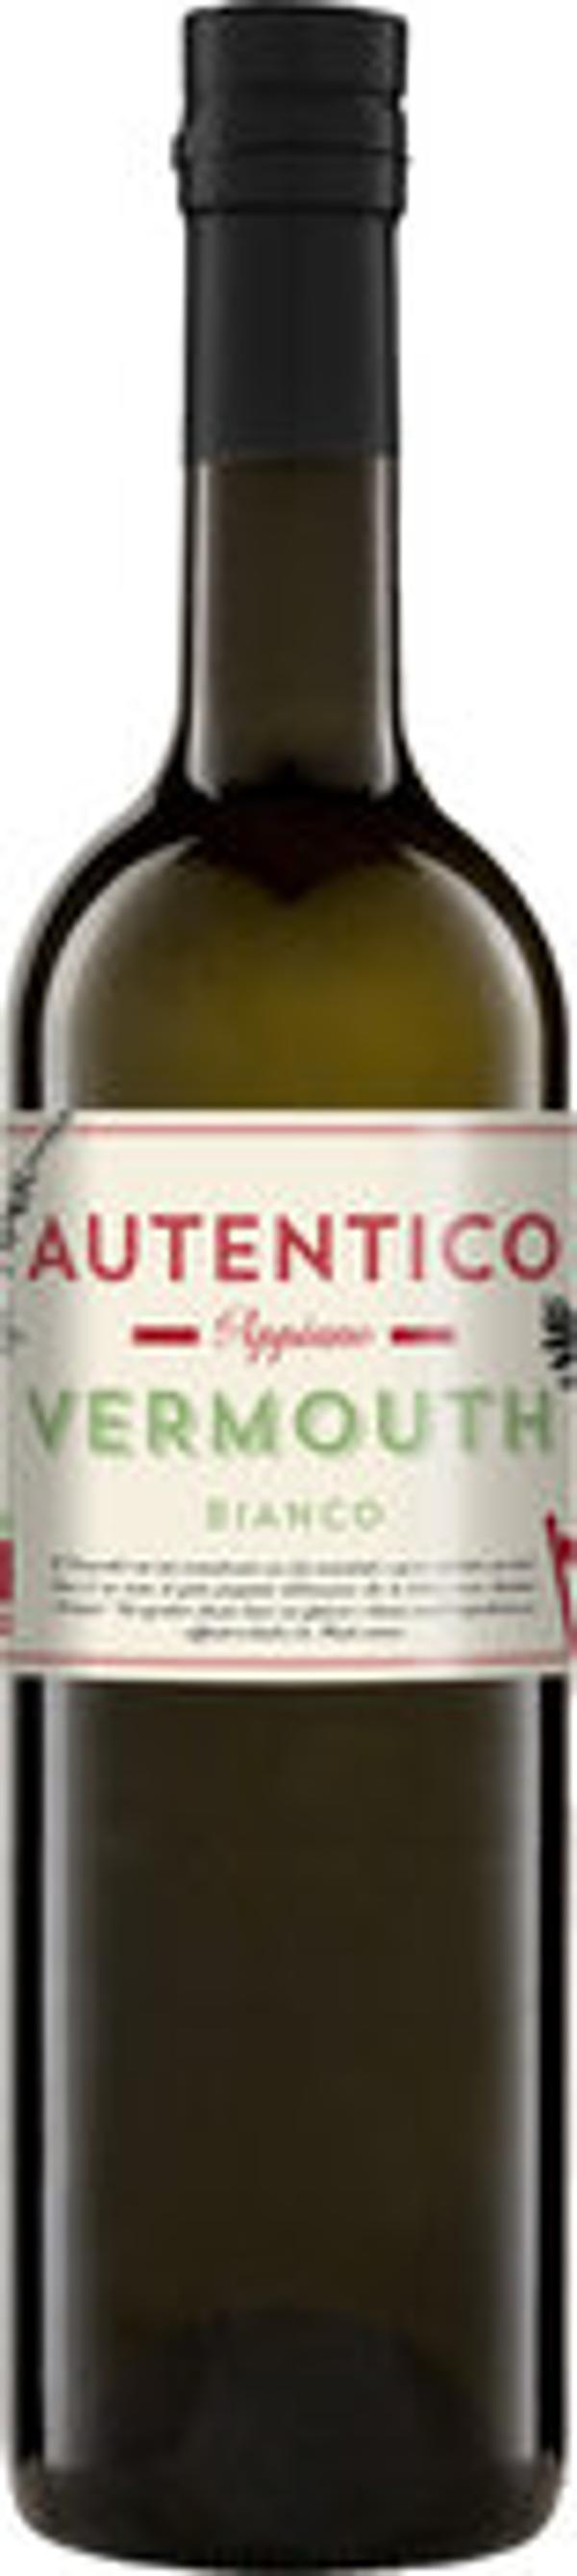 Produktfoto zu AUTENTICO Appiano Vermouth Bianco